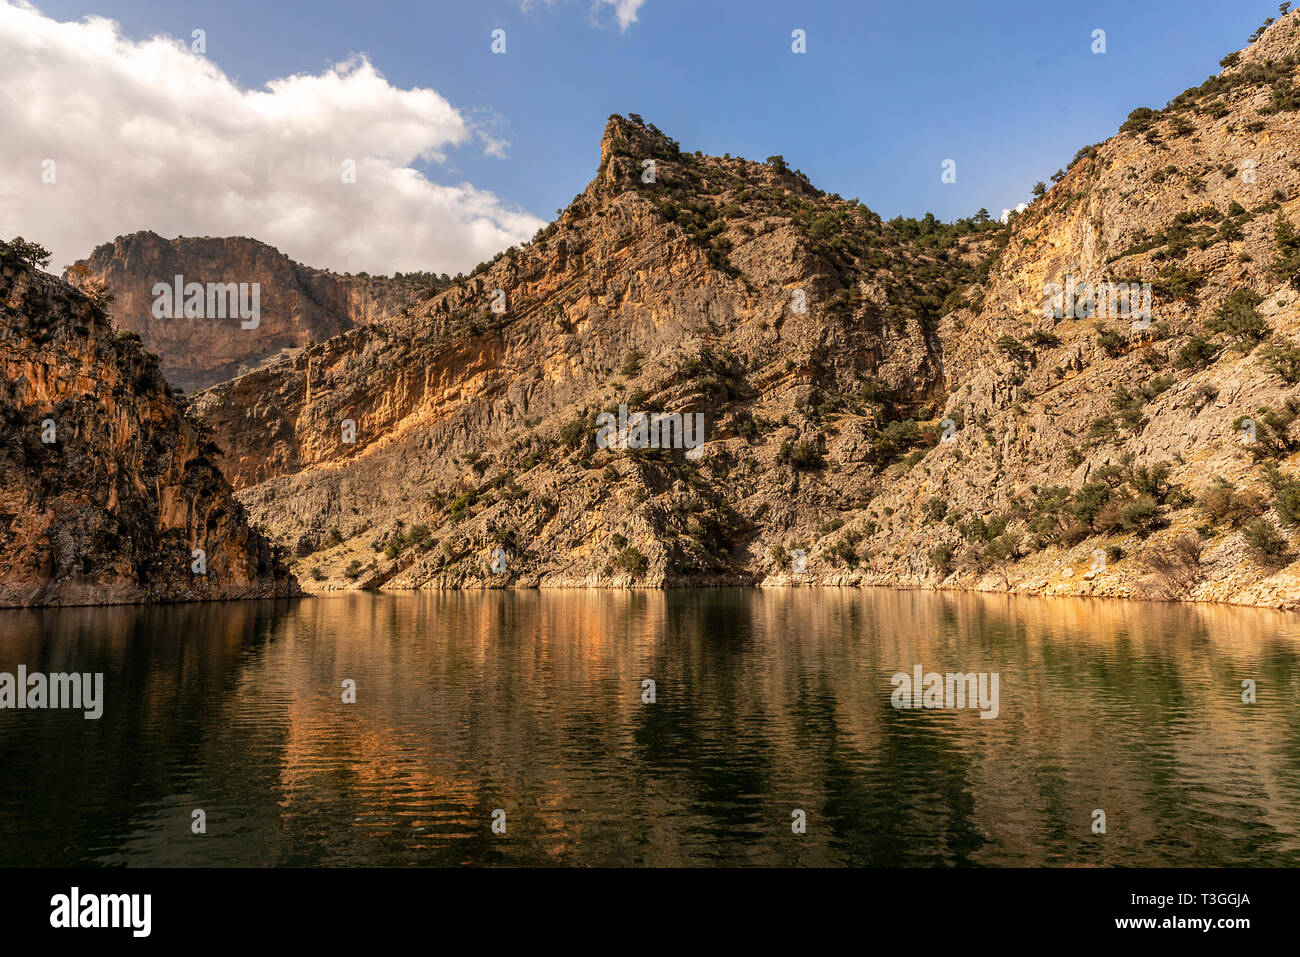 Interessant, dass der Name und die Lage mit herrlichem Blick in die Türkei neue Tourismus Punkt wurde Arapapisti Canyon Stockfoto